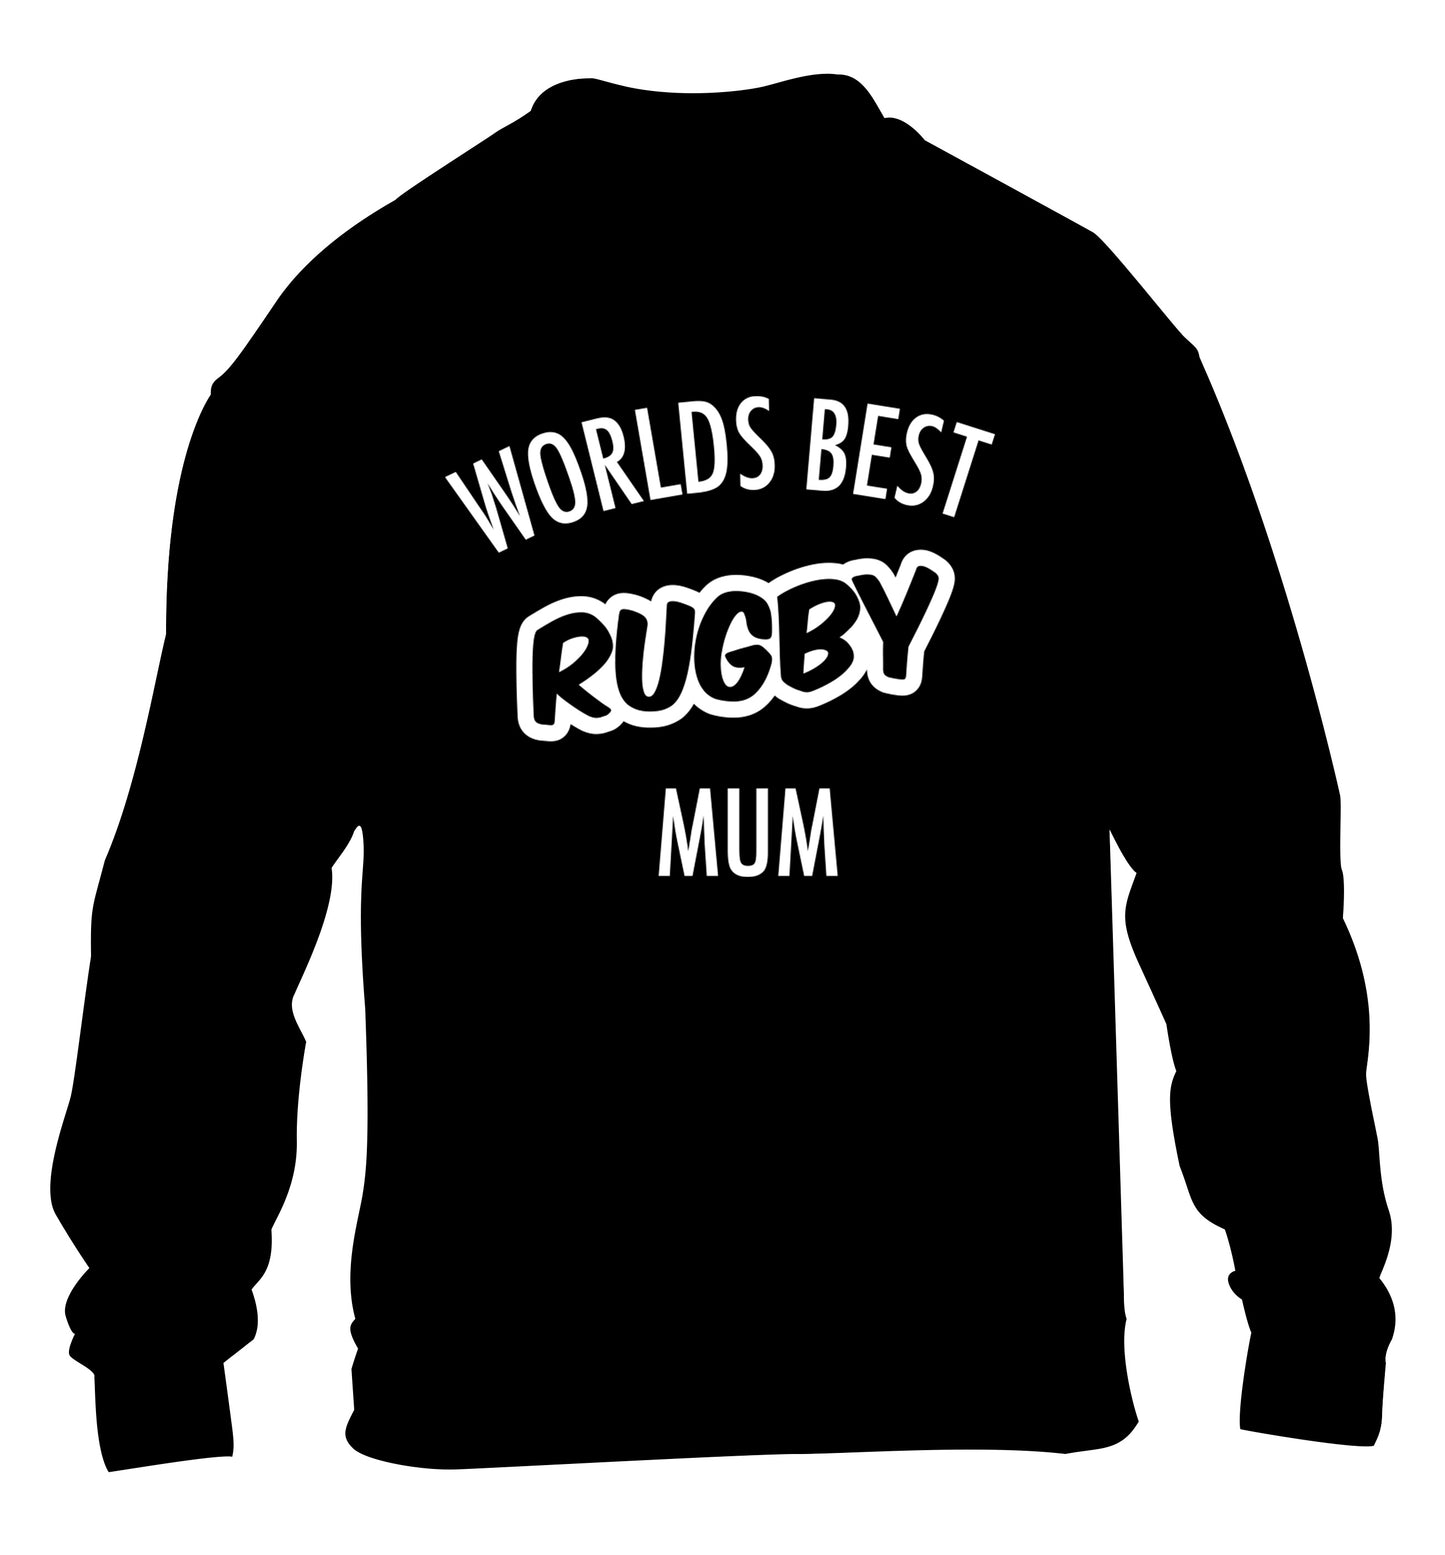 Worlds best rugby mum children's black sweater 12-13 Years